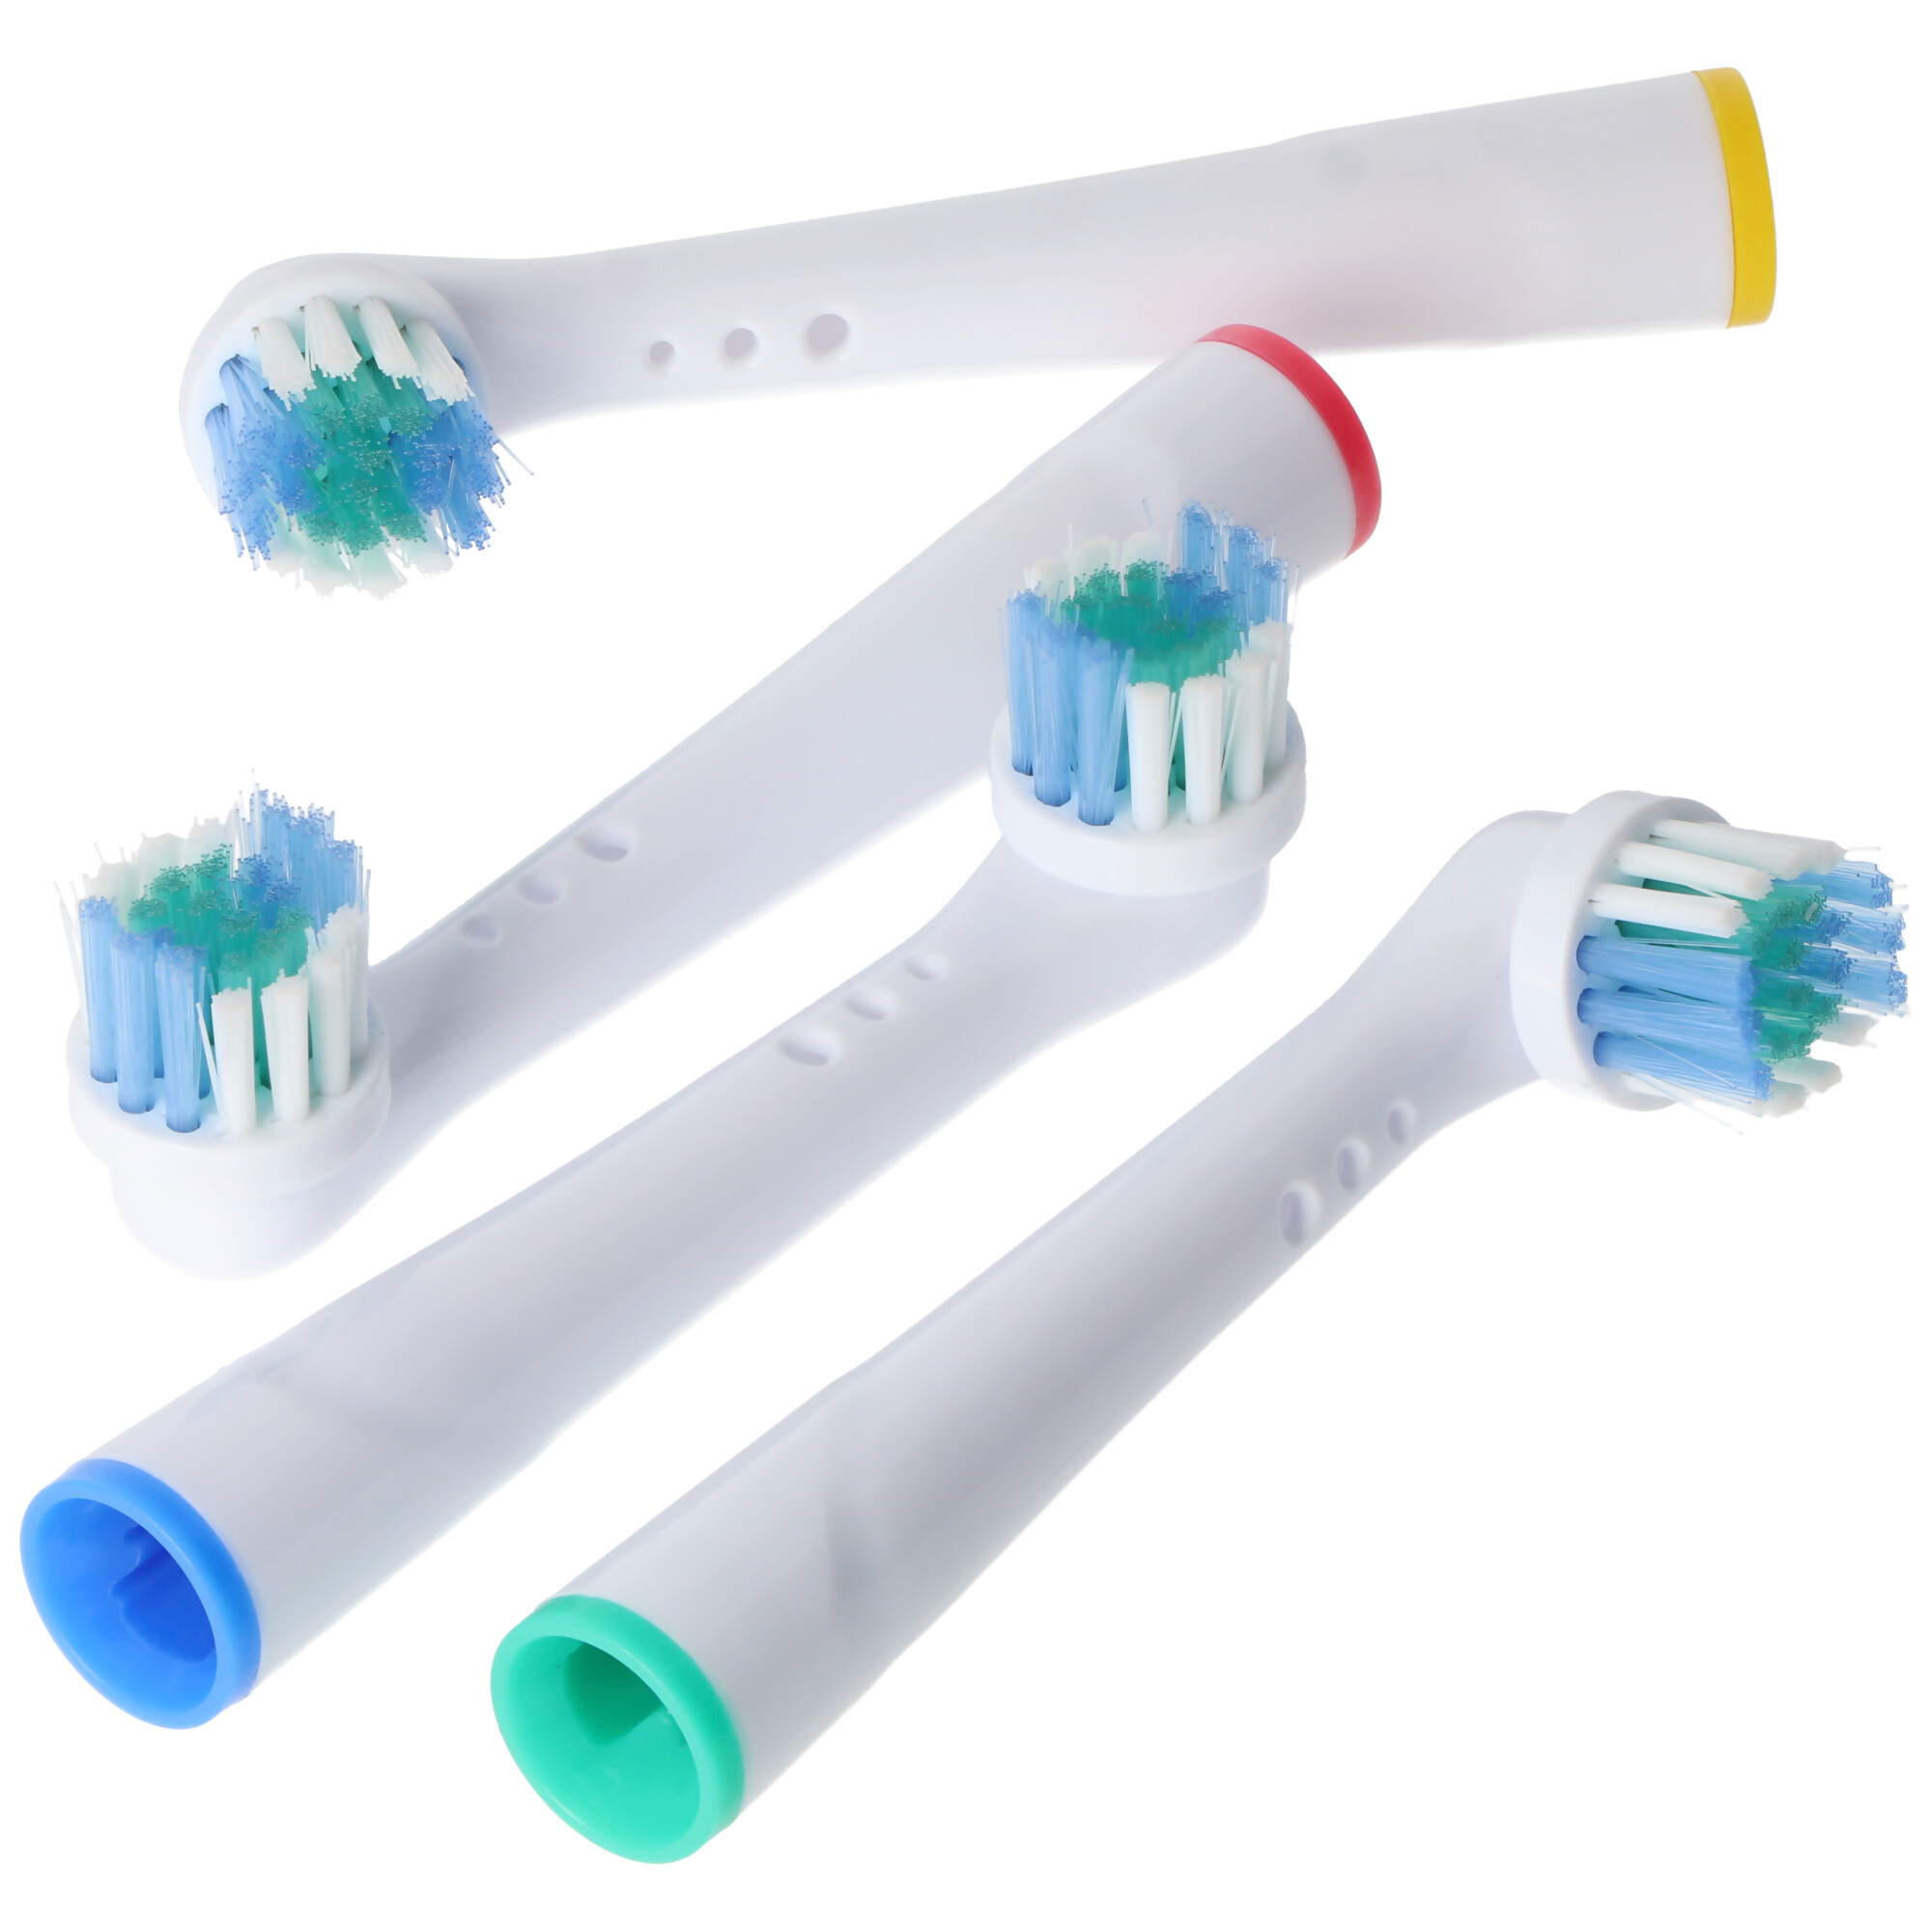 4 Stück Cleaning Brush Ersatz-Zahnbürstenkopf für elektrische Zahnbürsten von Oral-B, passend z.B. für Oral-B D10, D12, D16, D12 und viele andere Modelle von Oral-B